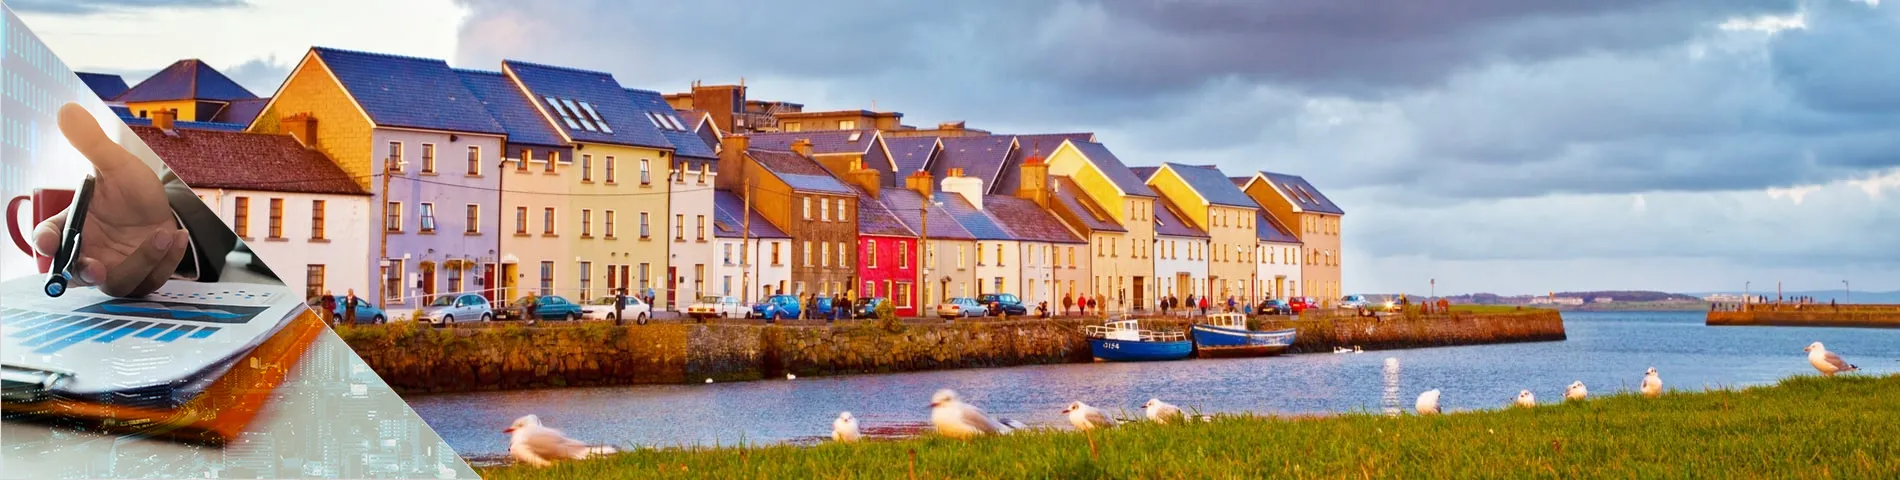 Galway - Bankacılık ve Finans